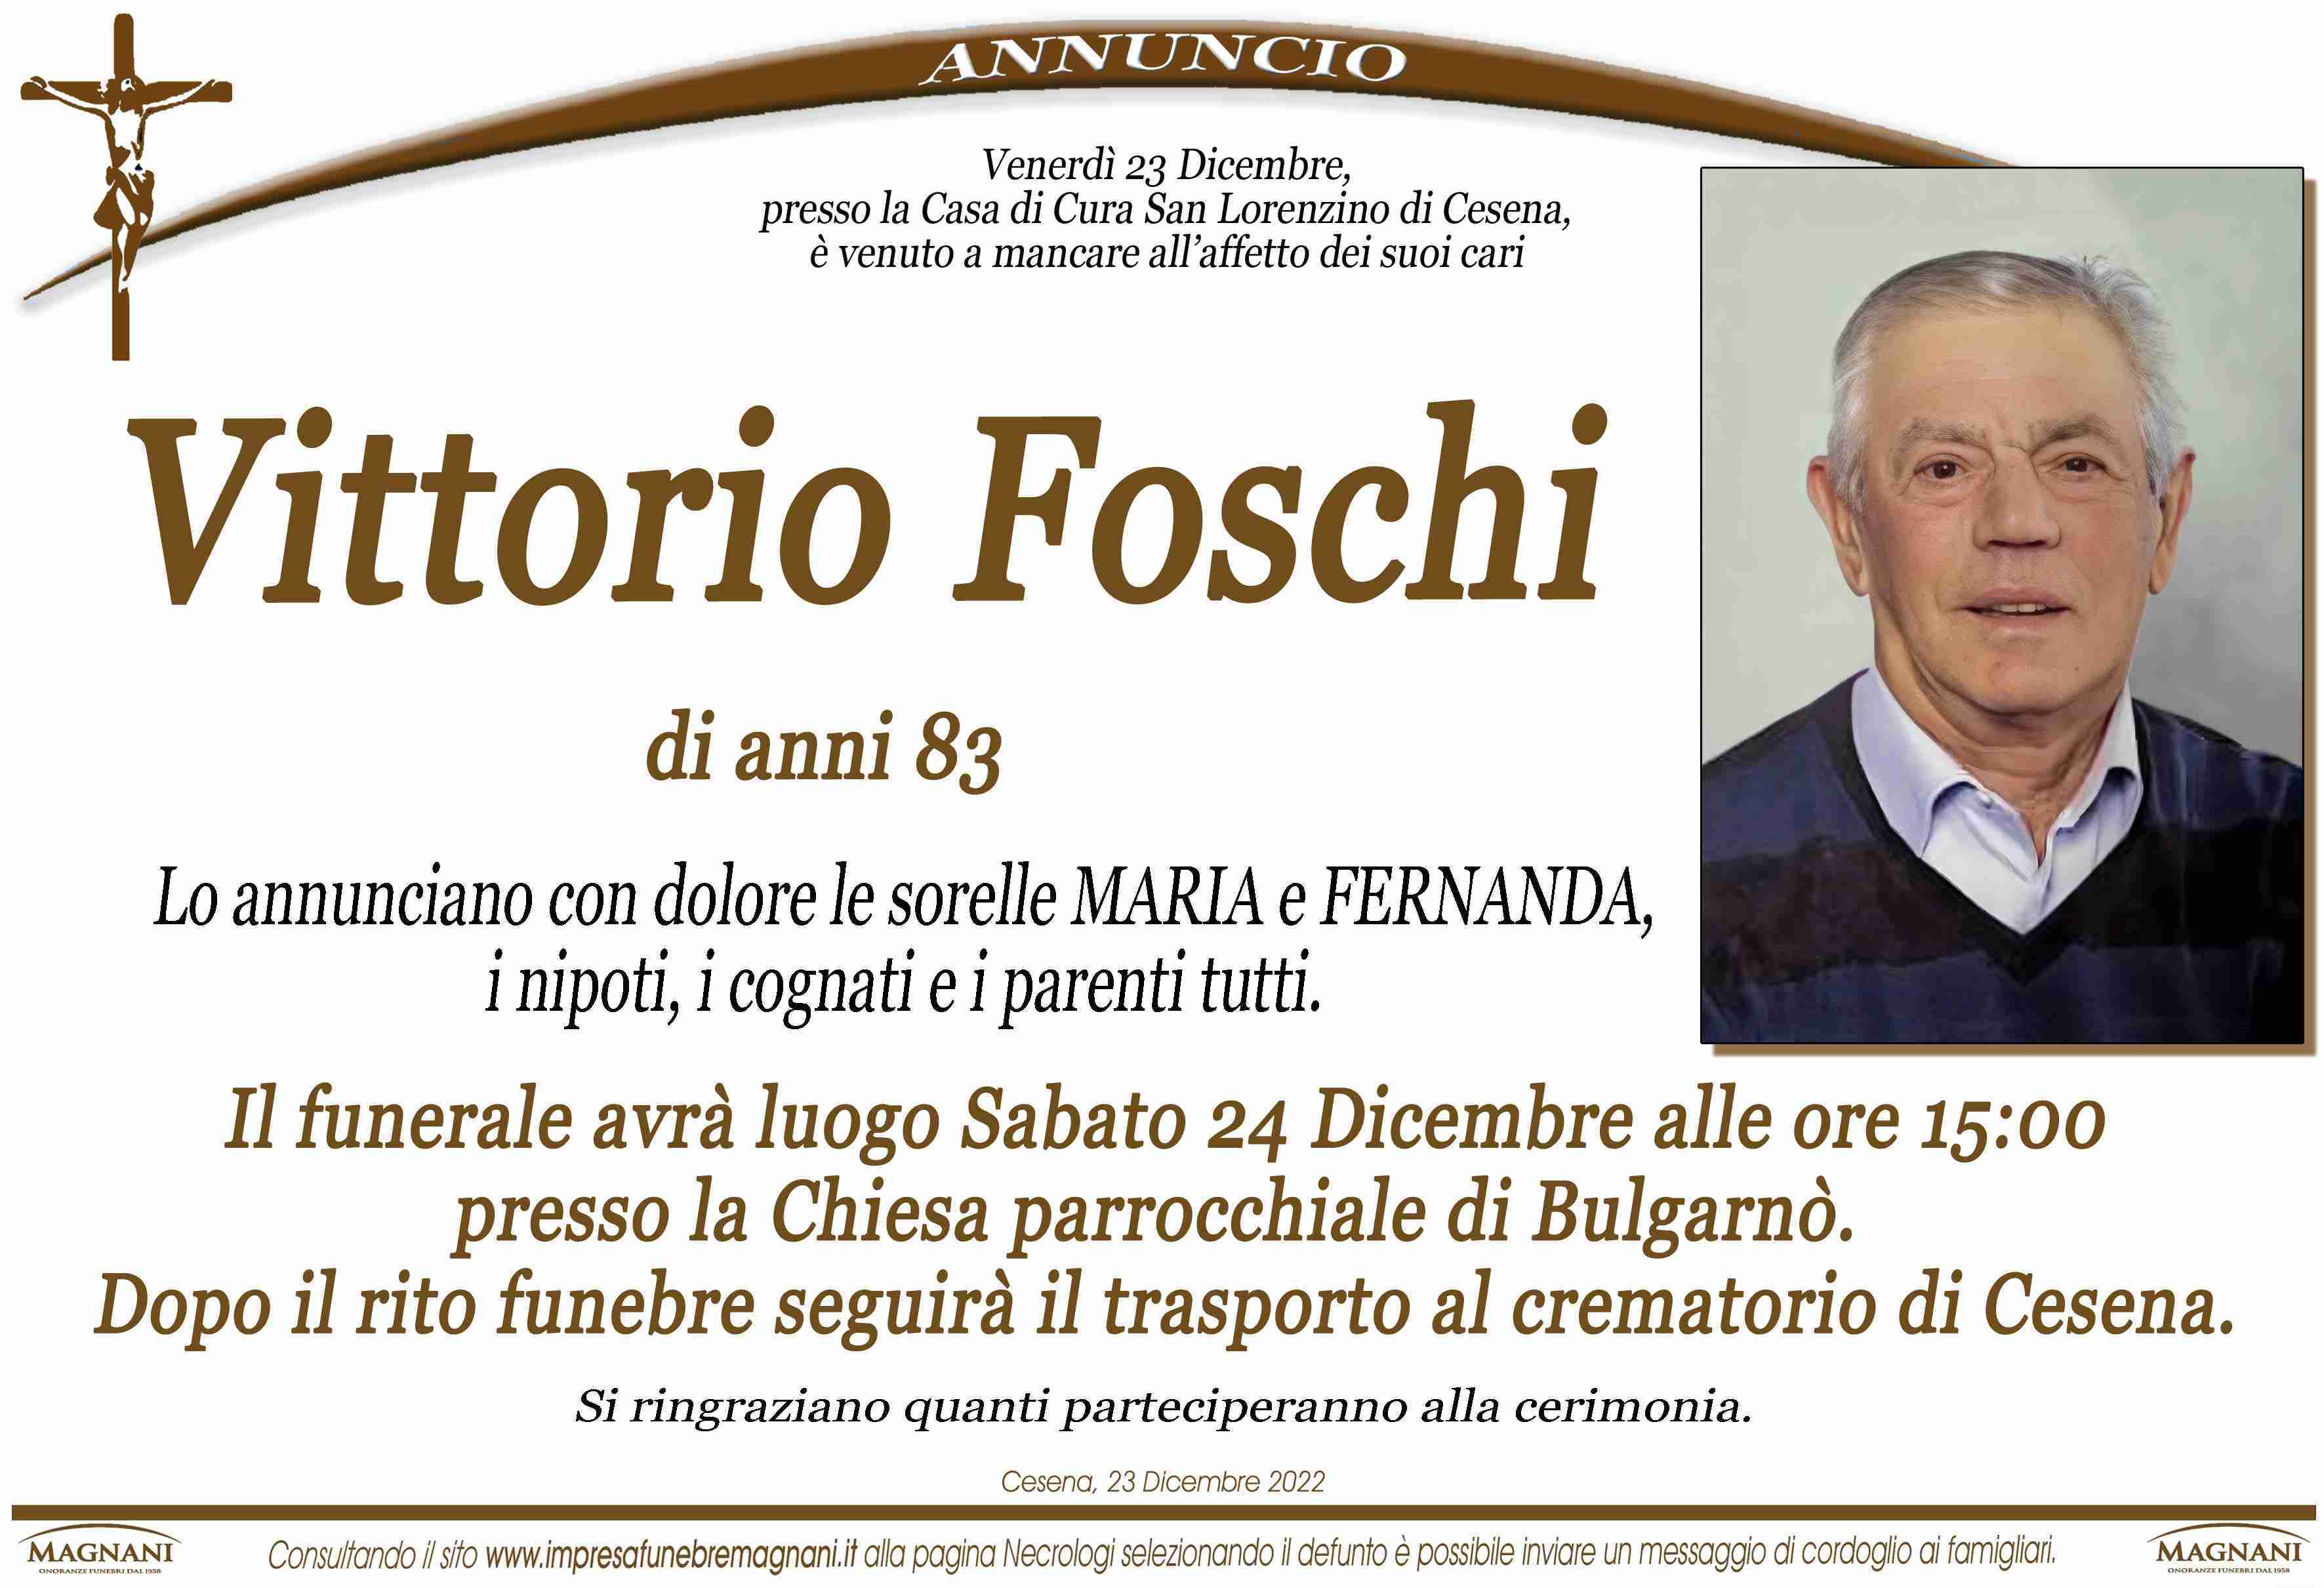 Pio (Vittorio) Foschi